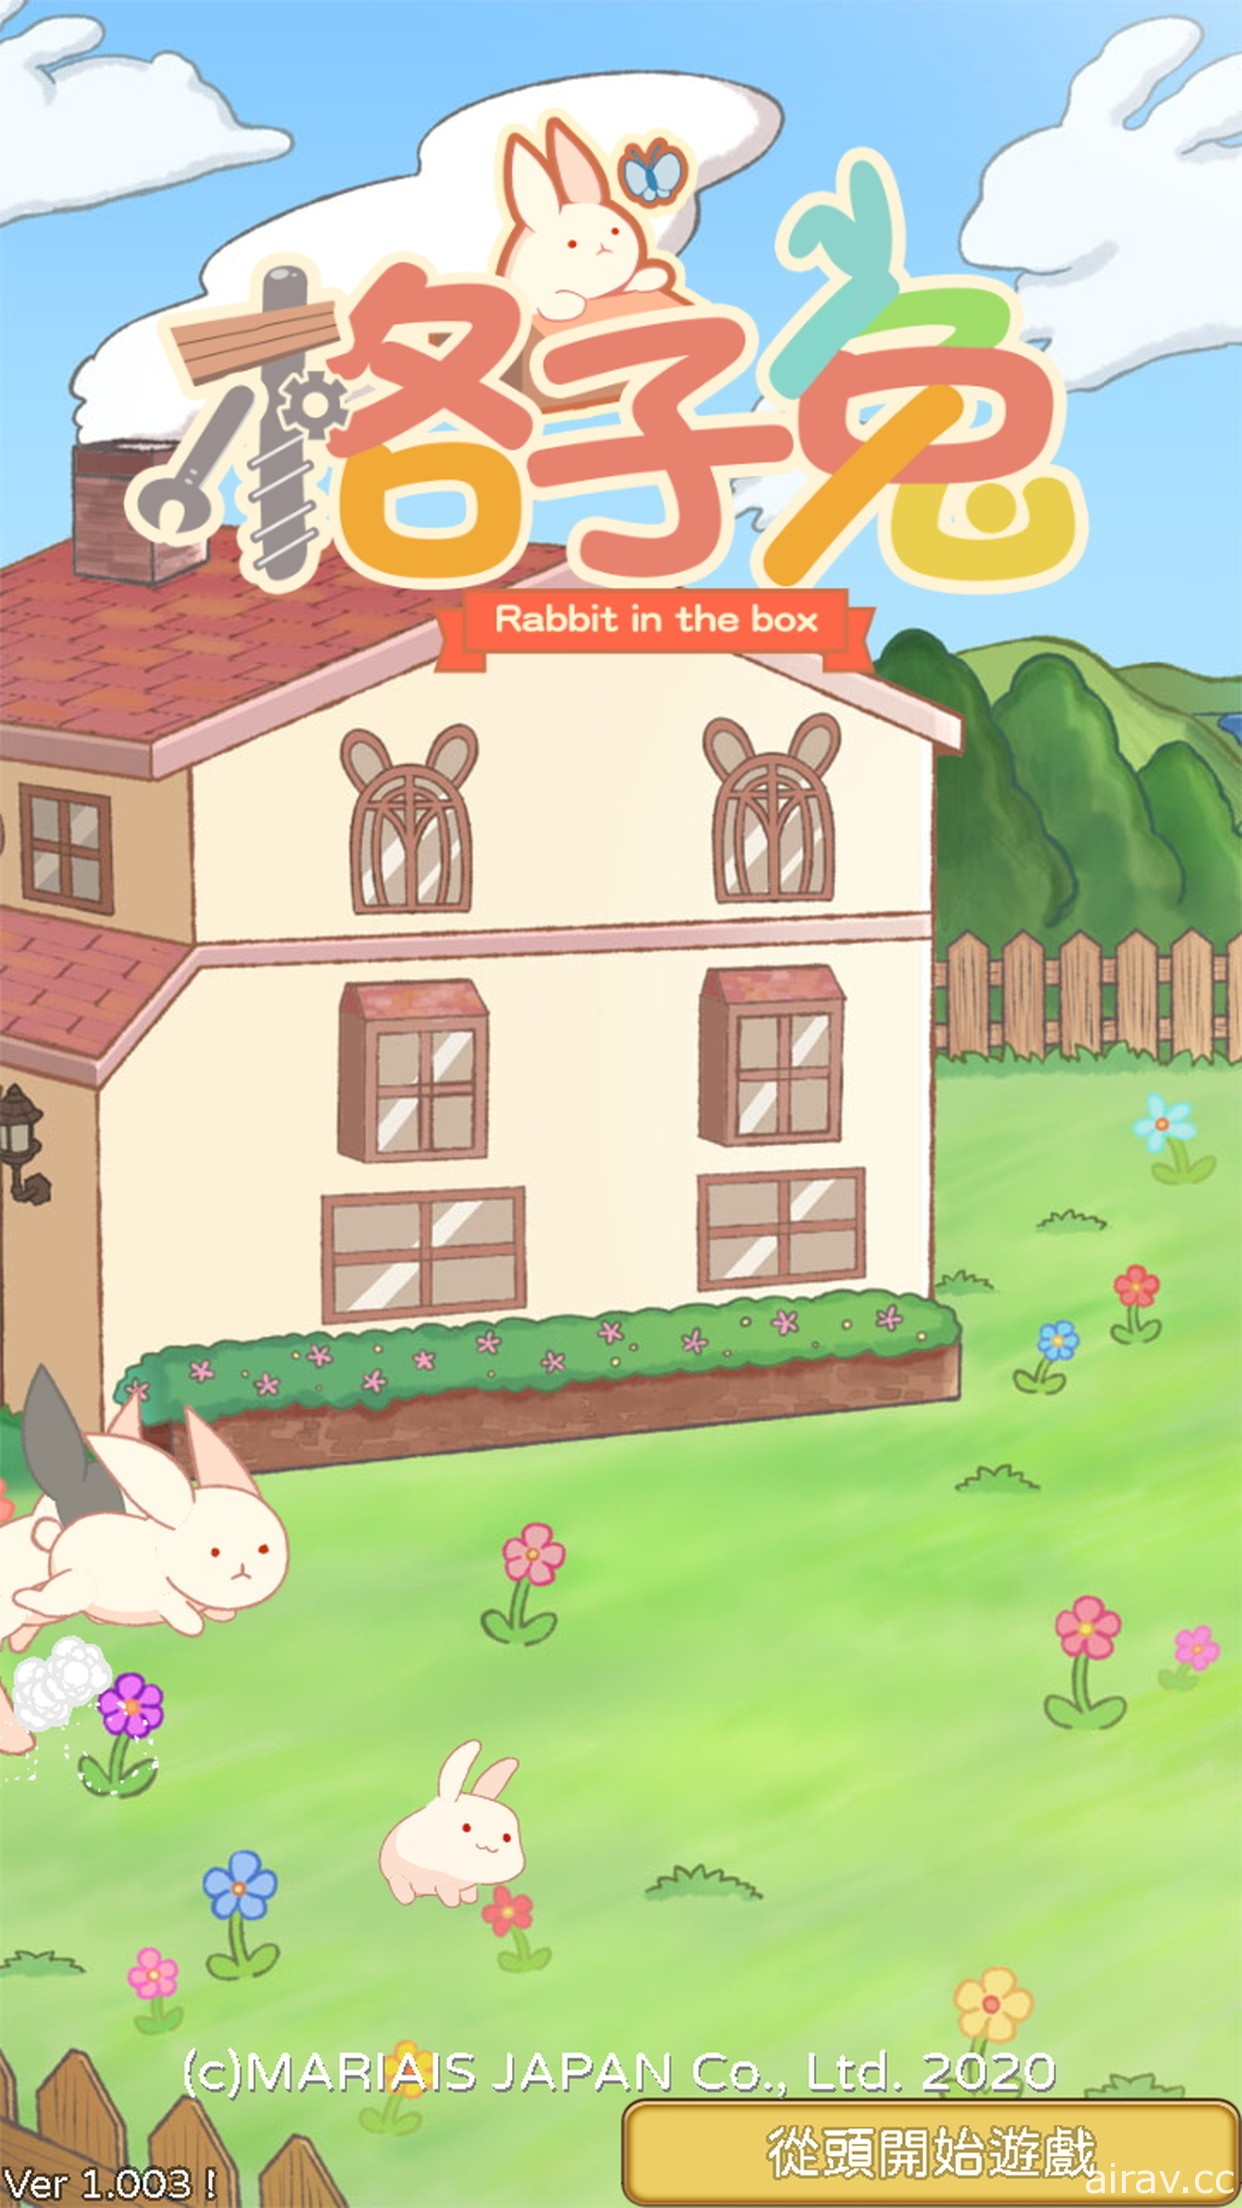 放置型遊戲《格子兔》12 月 28 日開始營運 布置小屋培養出不同類型的兔子